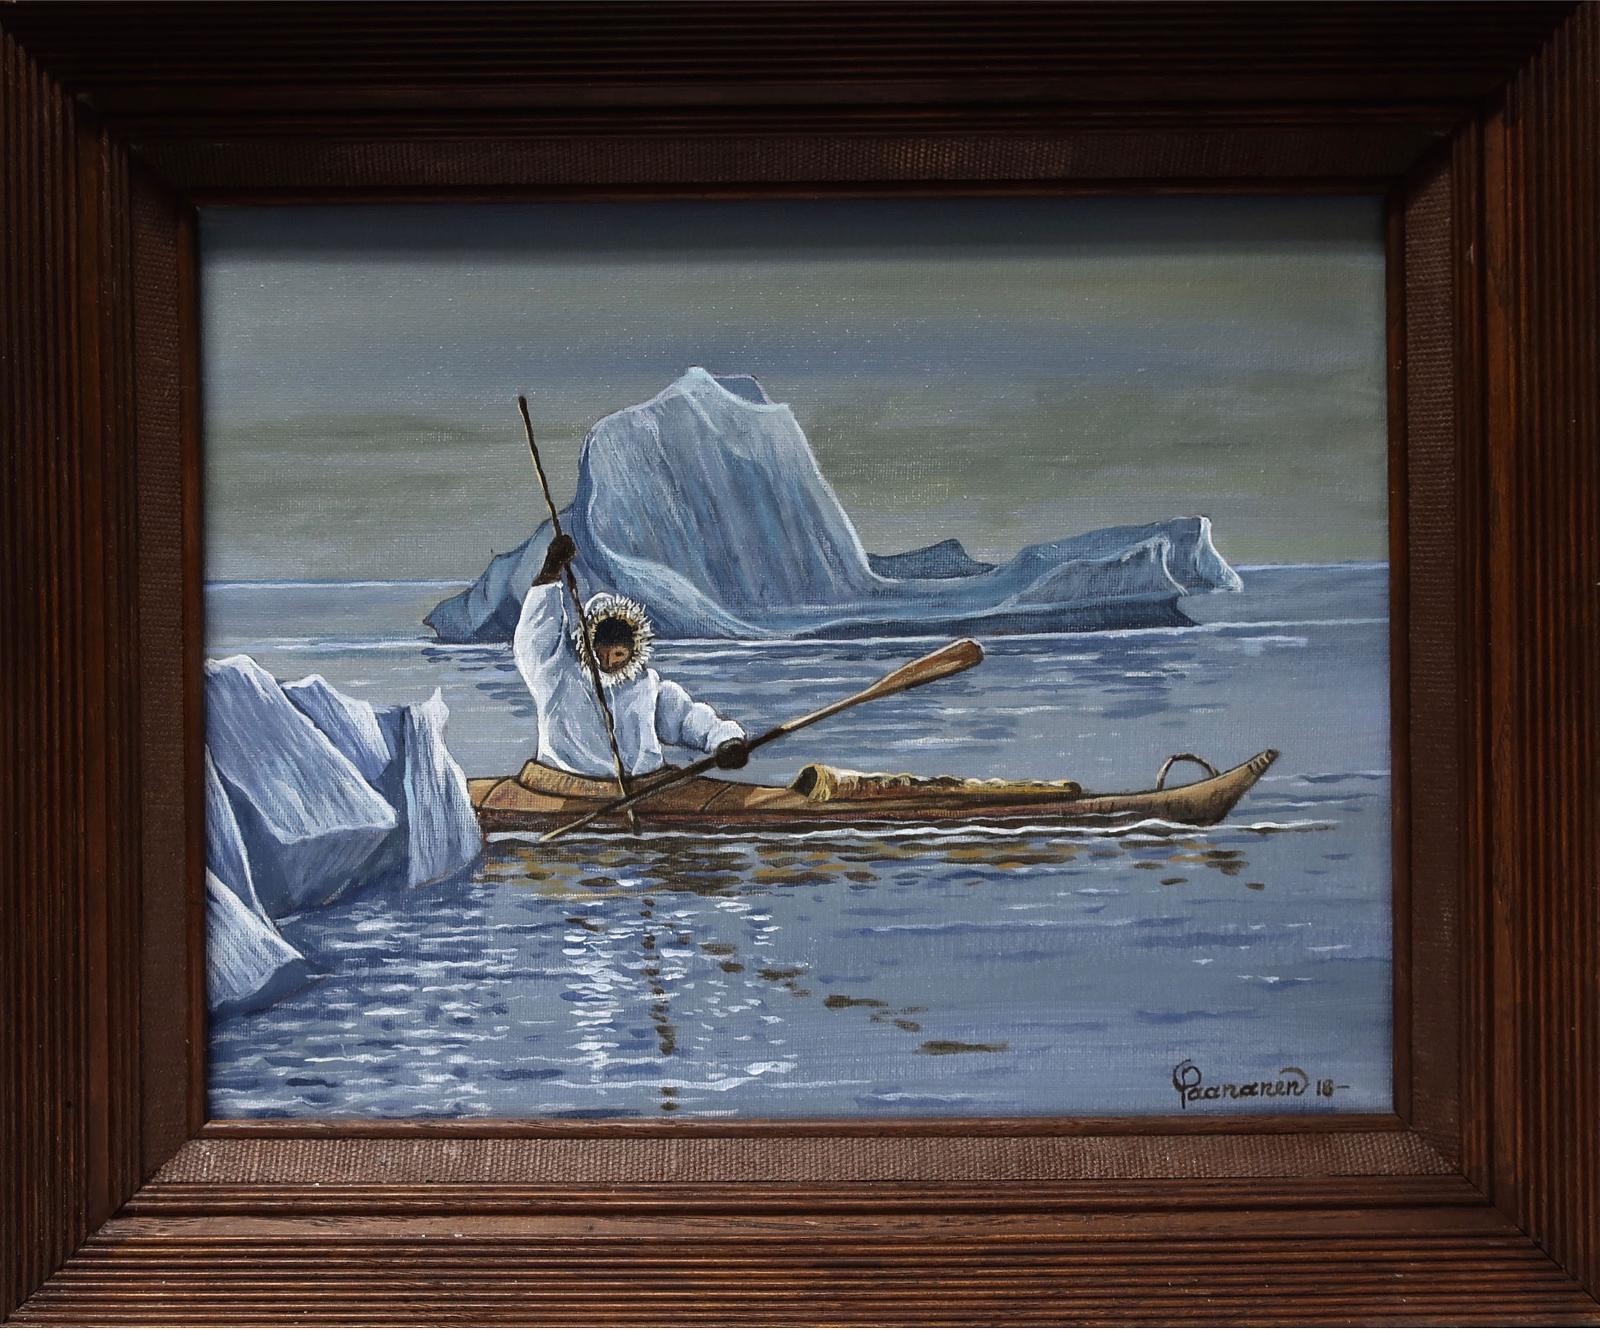 Robert Paananen (1934) - Sunken Seal Search